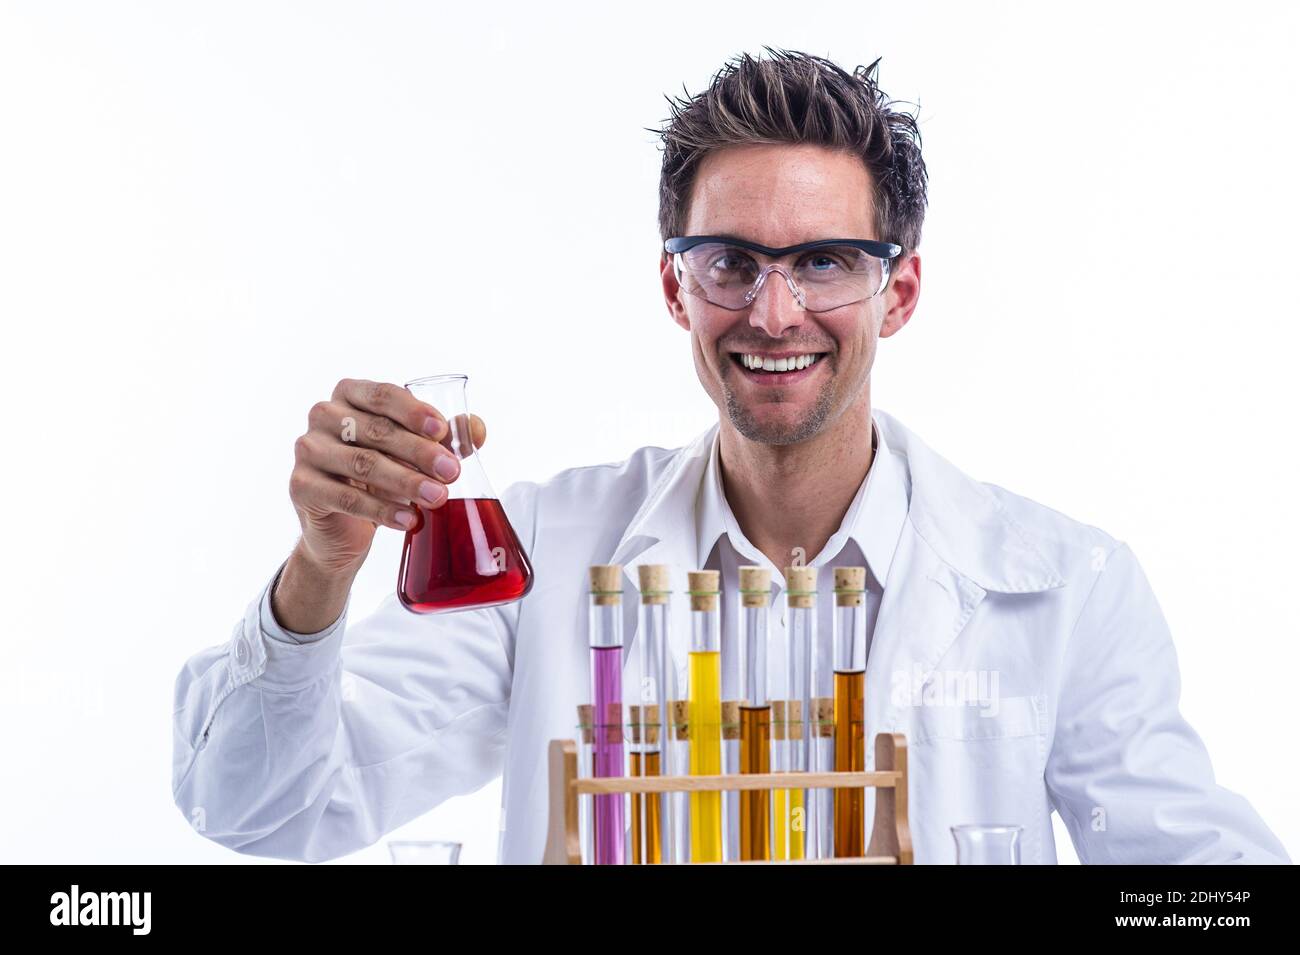 Chemiker im Labor mit Reagenzglas, 30, 35, Jahre, Model Release, Stock Photo